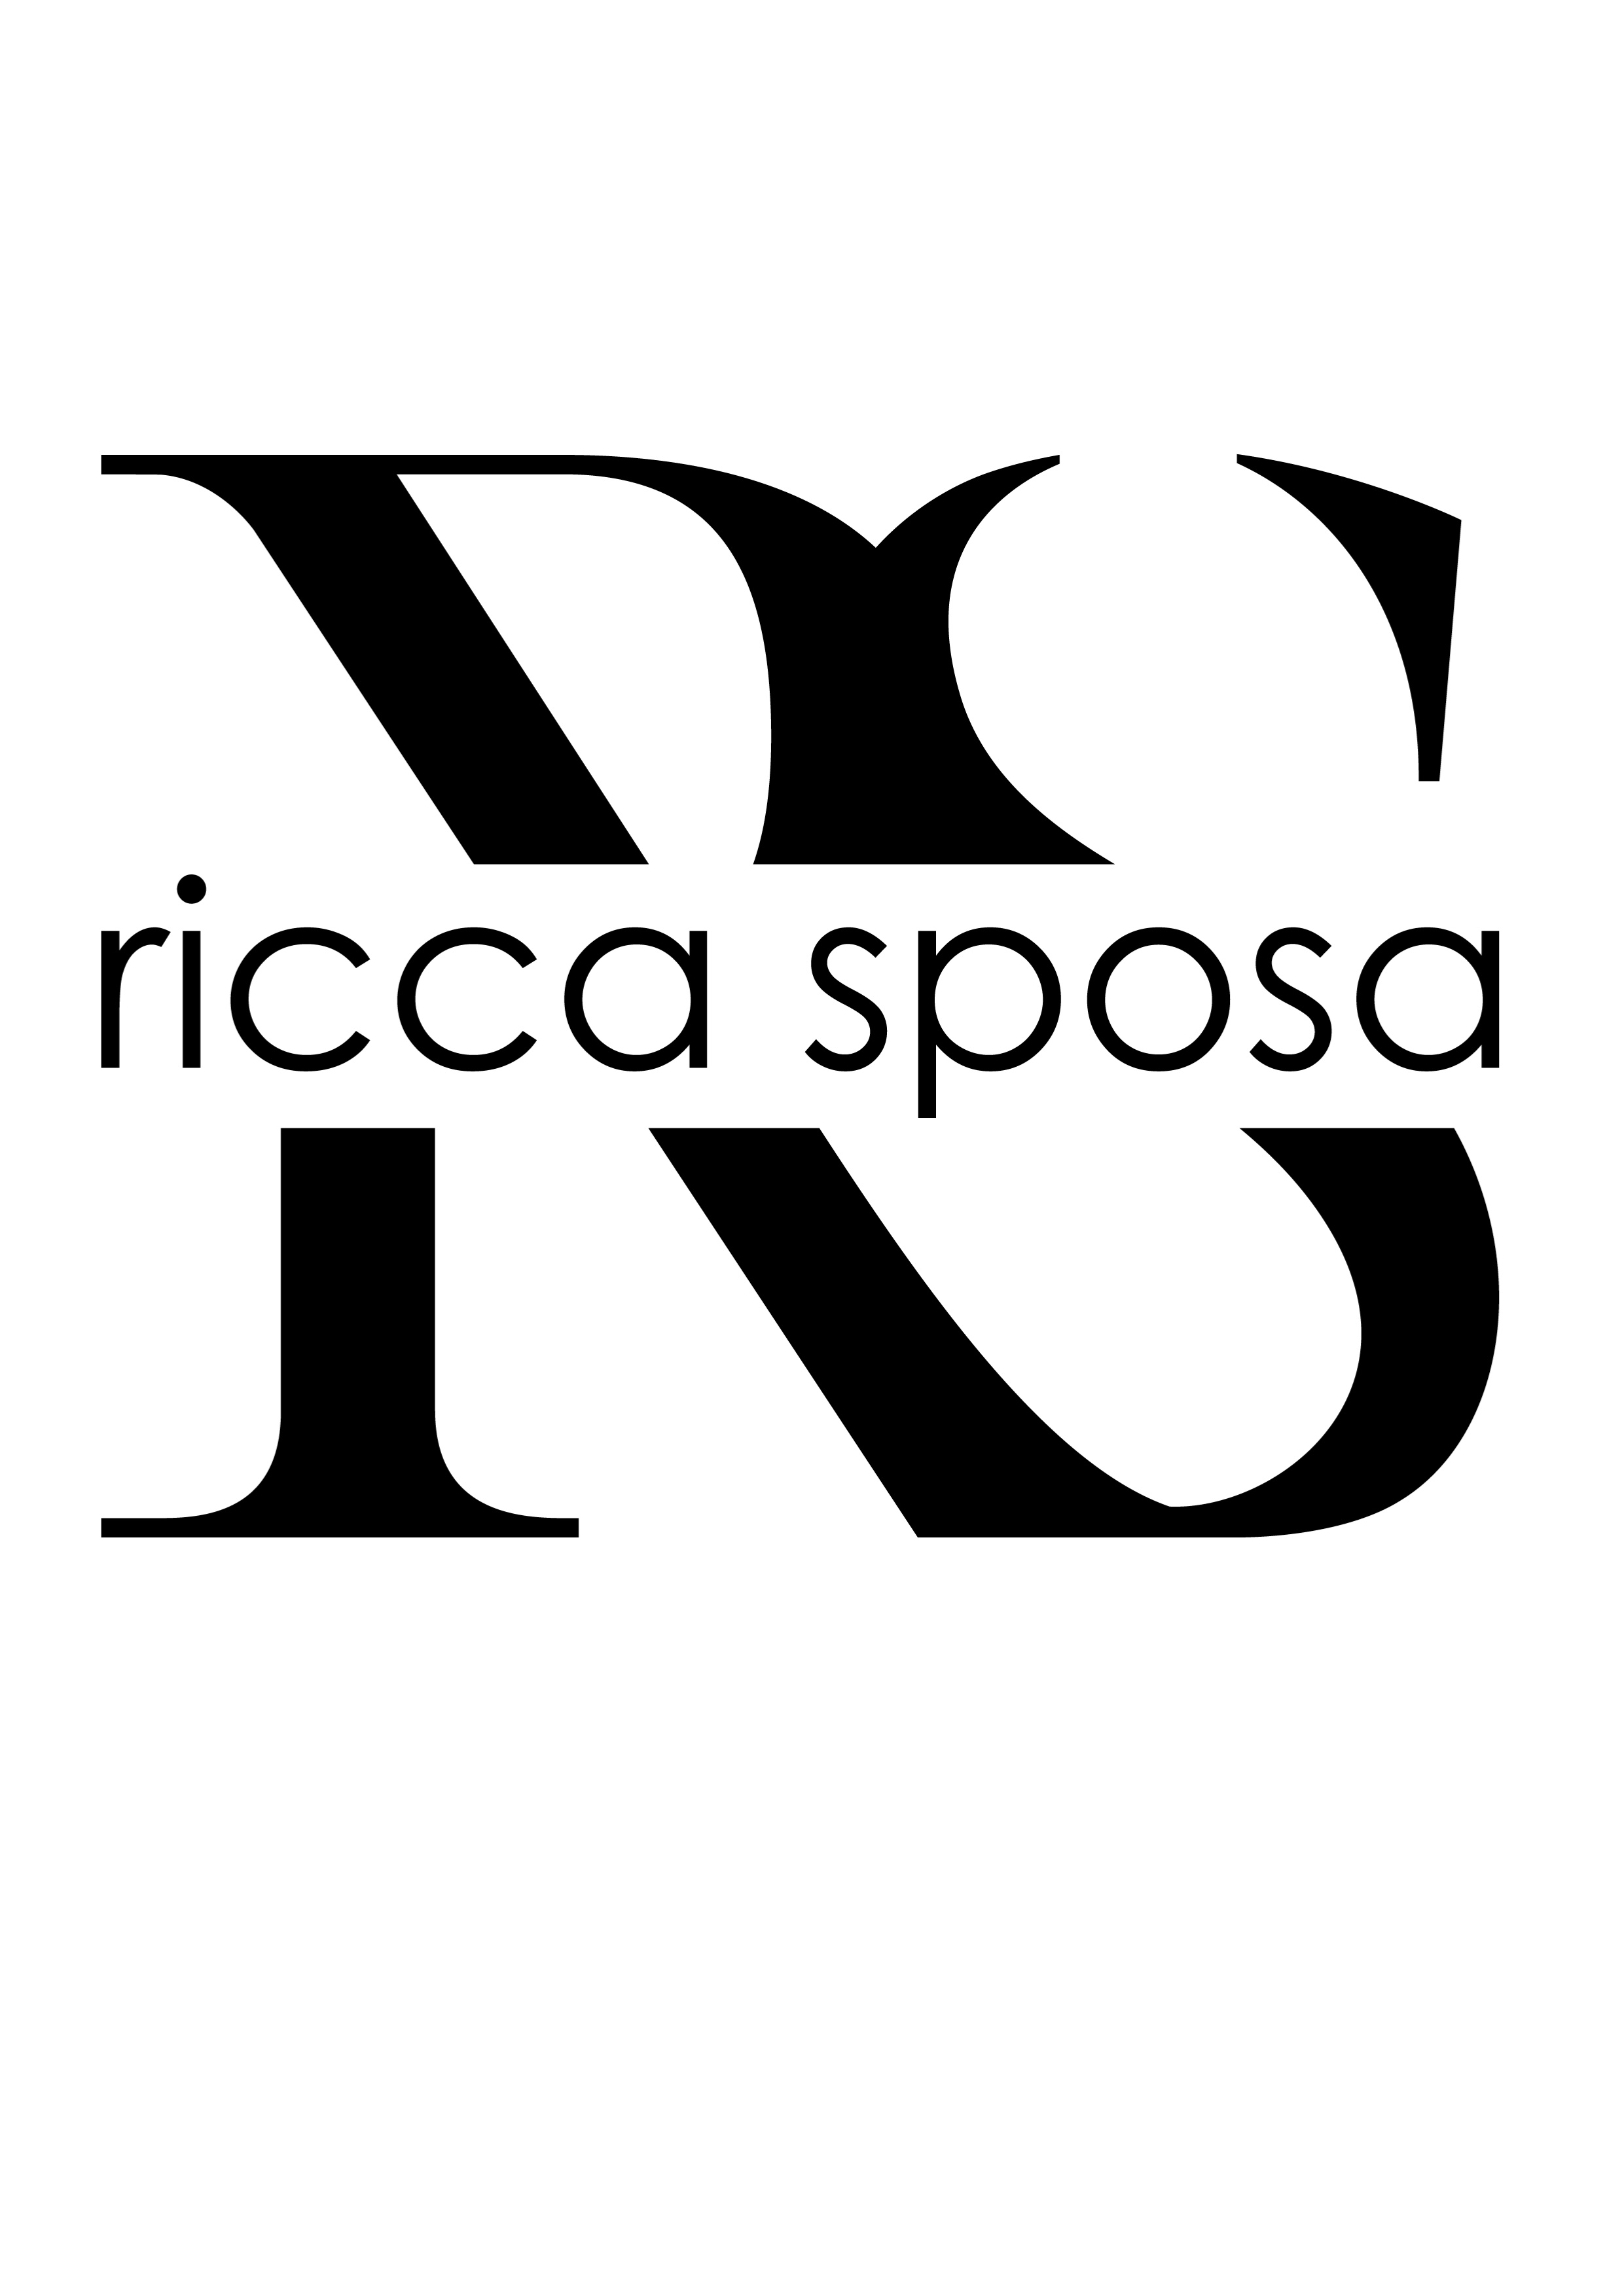 ricca-sposa - logo kolekcji sukien ślubnych